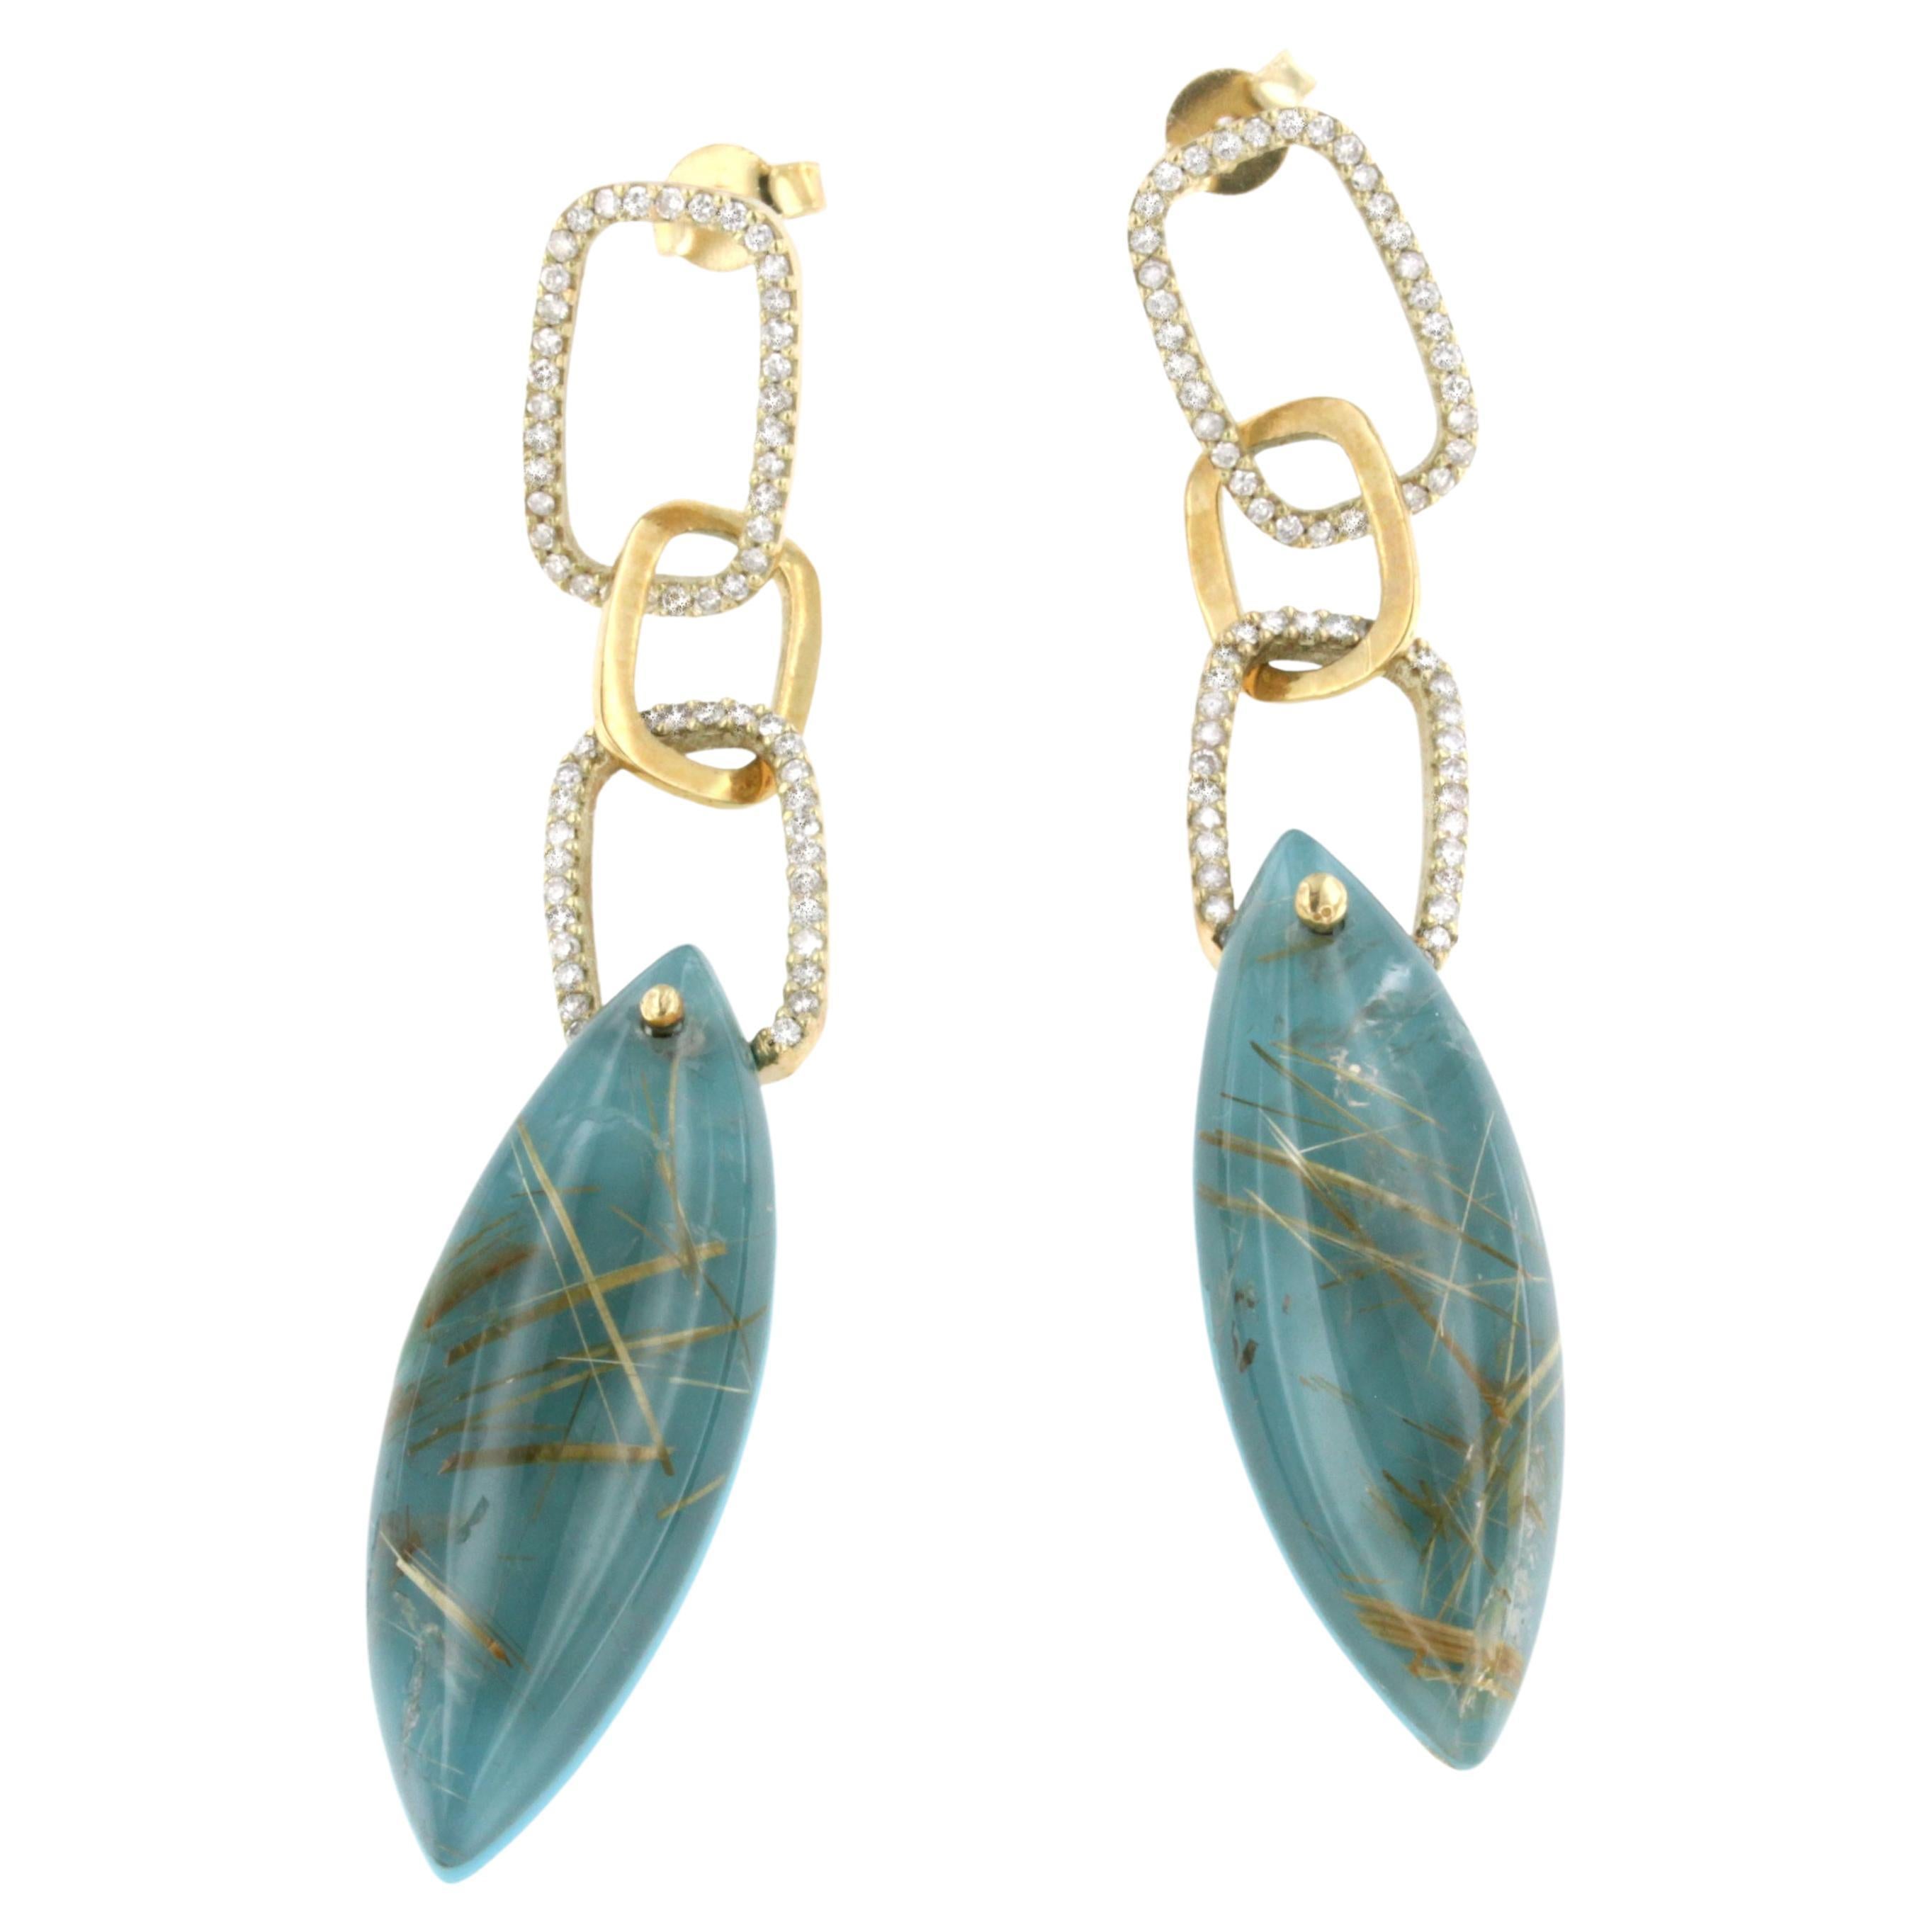 Boucles d'oreilles en or rose 14 carats avec turquoise, quartz rutile et diamants blancs